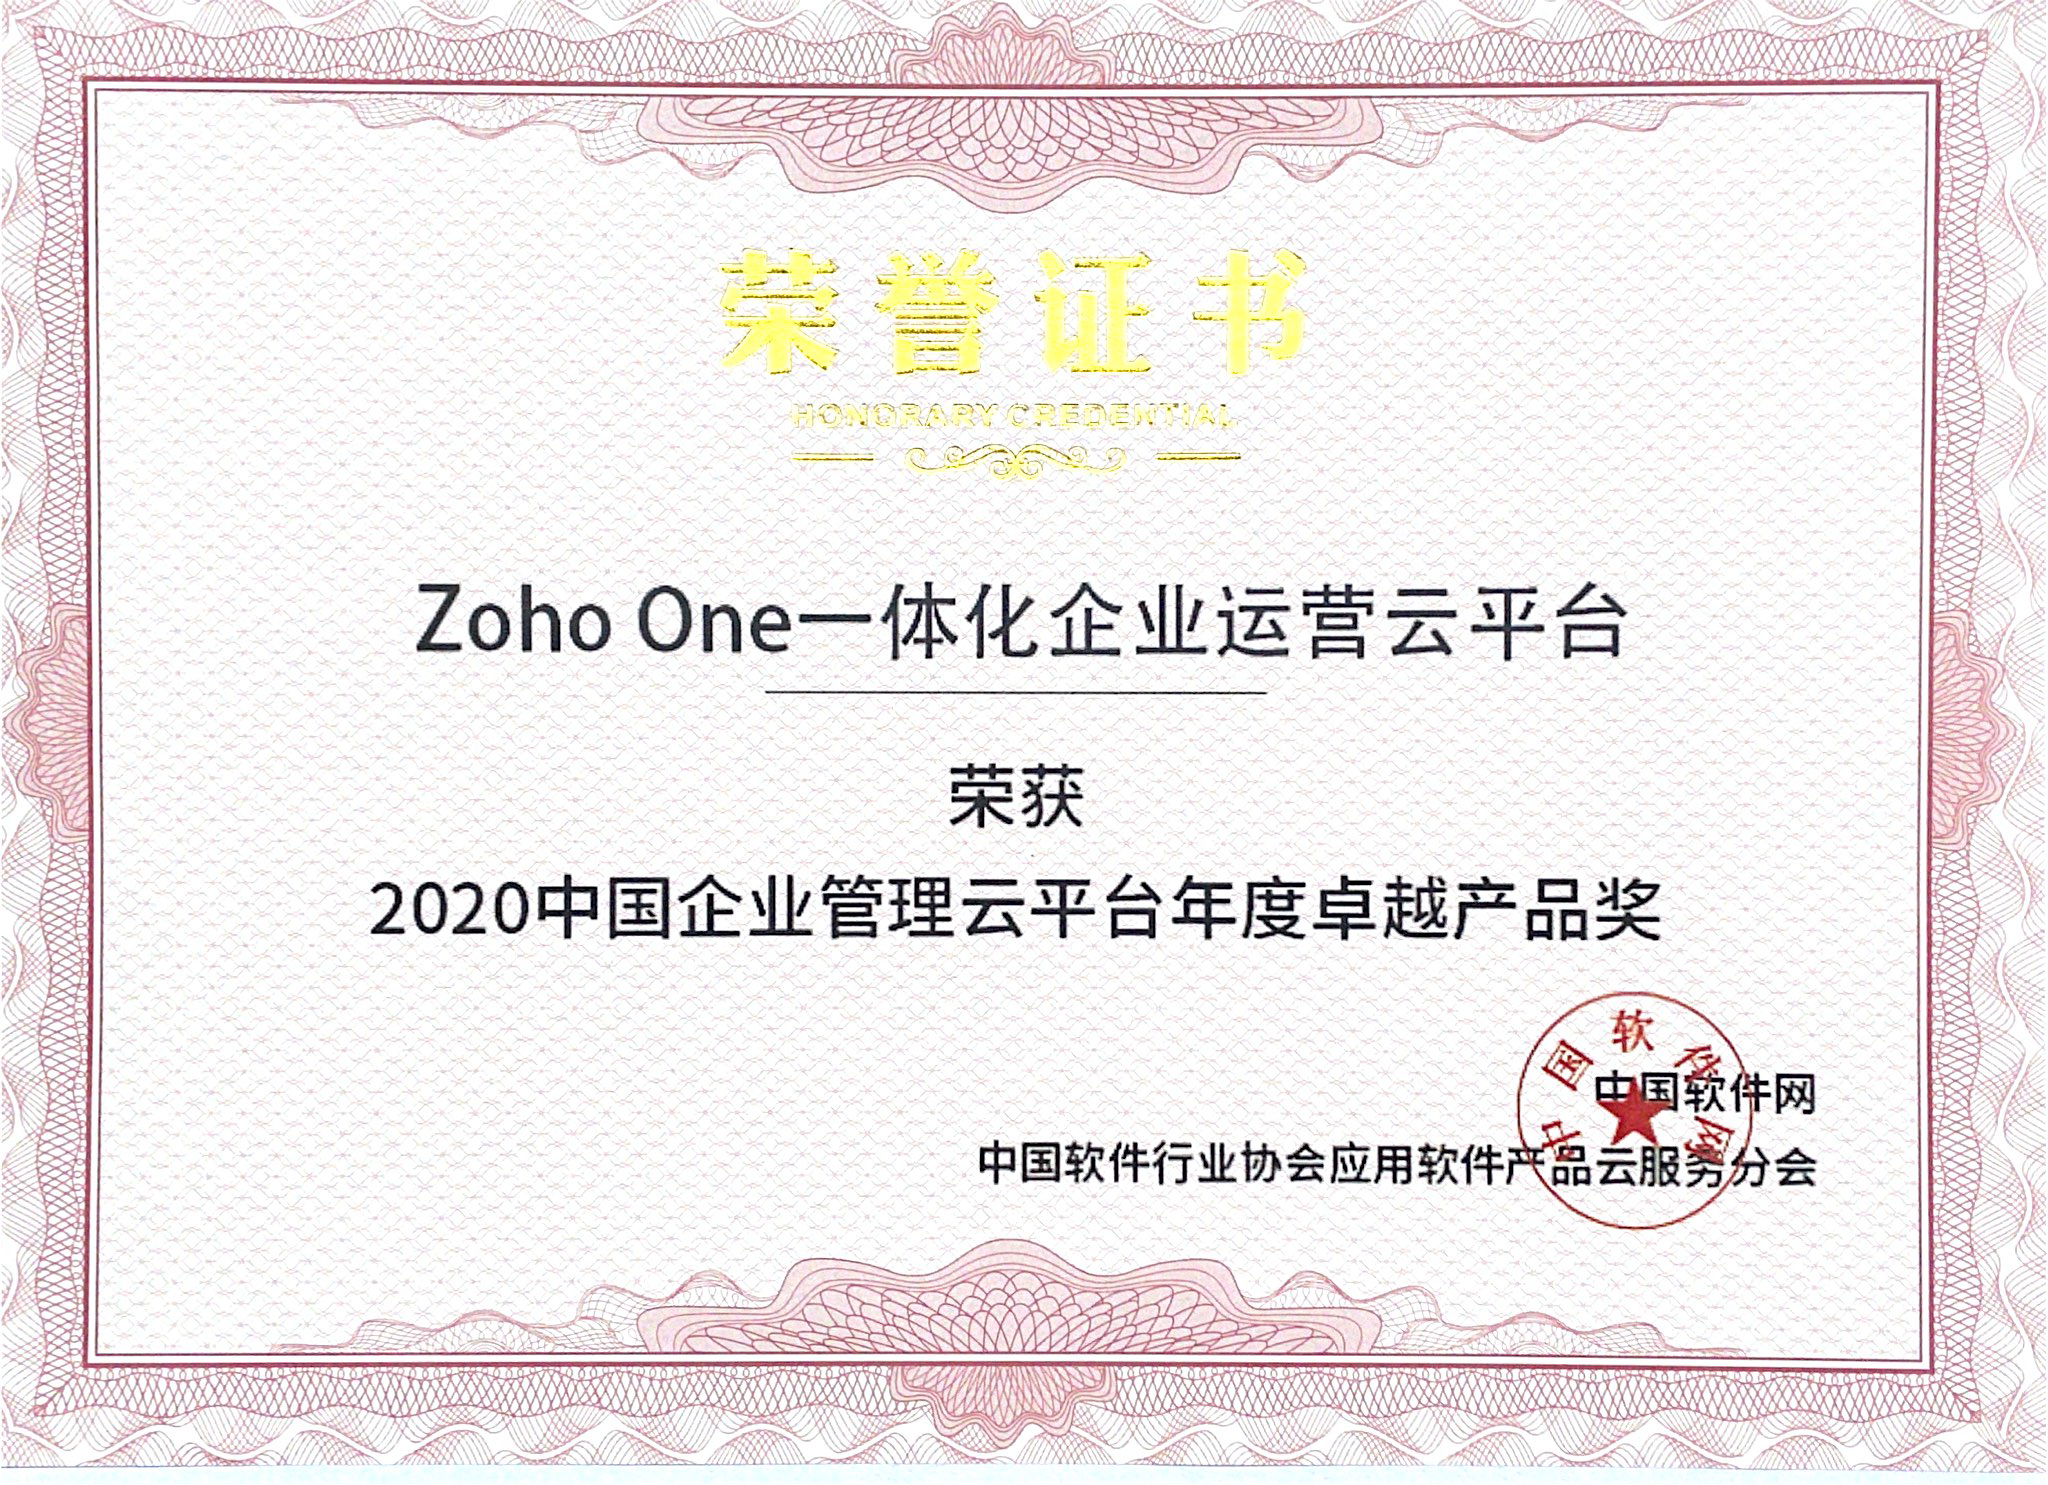 Zoho One荣膺“2020中国企业管理云平台年度卓越产品”奖